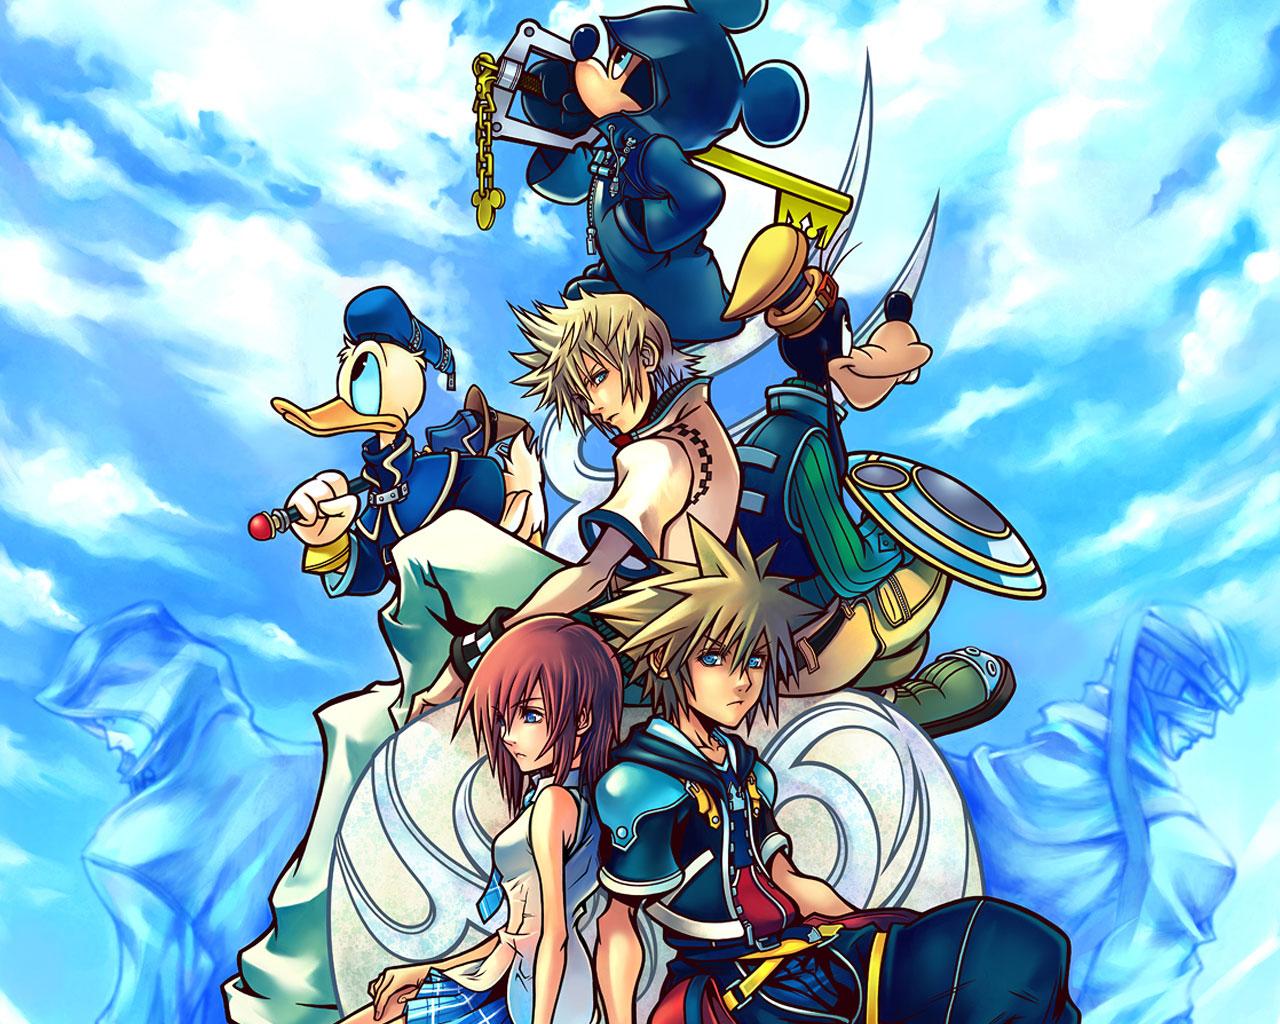 1280 x 1024 · jpeg - [50+] Kingdom Hearts Live Wallpaper on WallpaperSafari